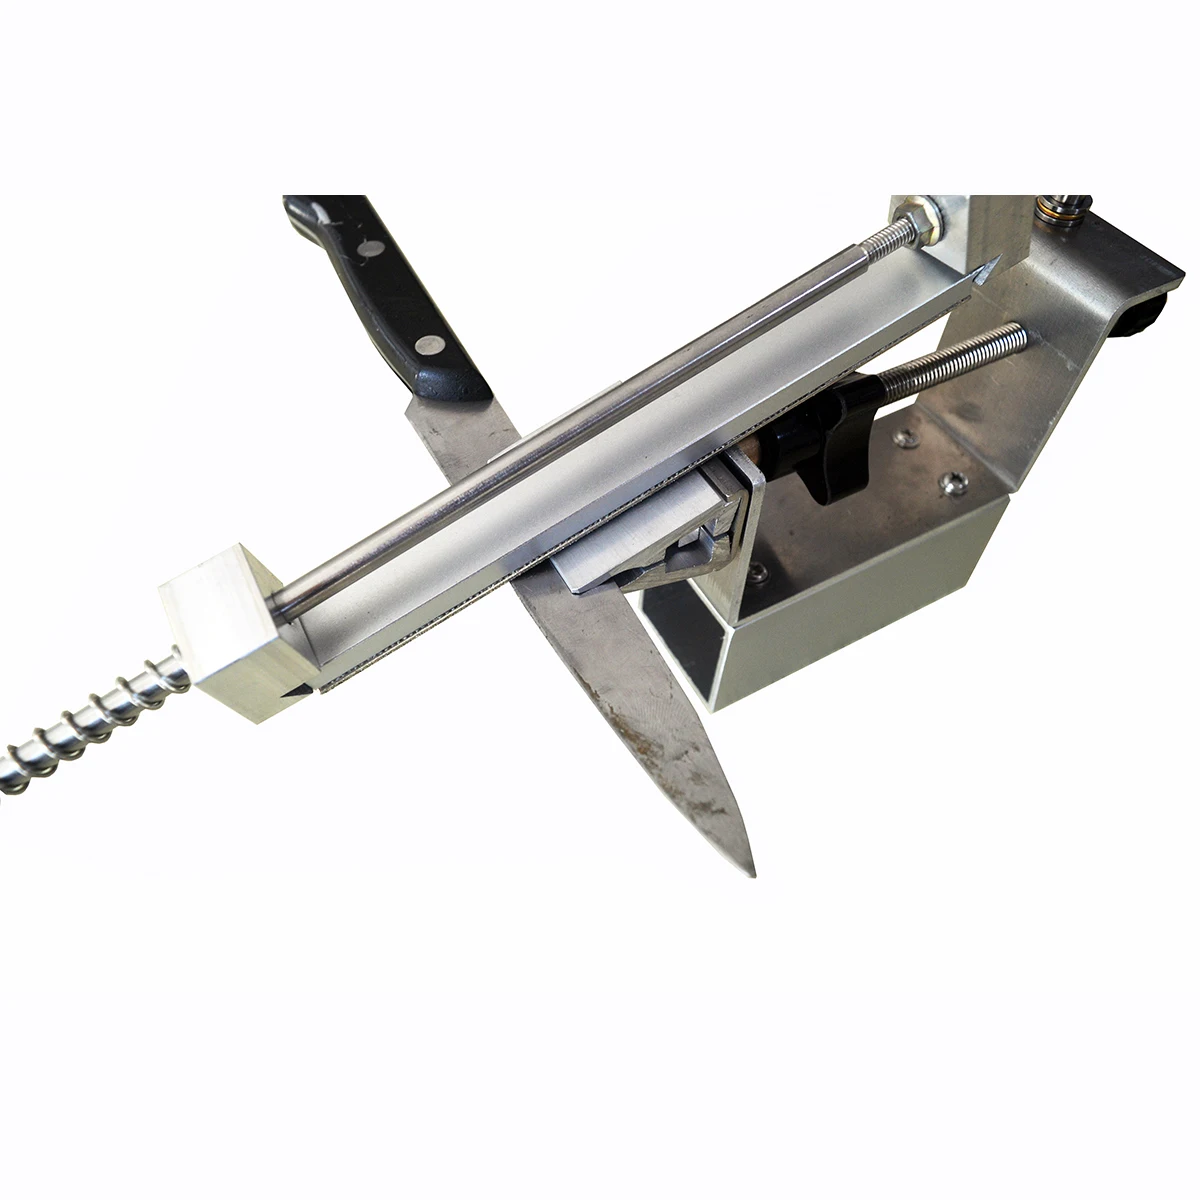 Новая кухонная точилка из алюминиевой стали, профессиональная точилка для кухонных ножей, точильные инструменты с фиксированным углом и алмазным точильным камнем